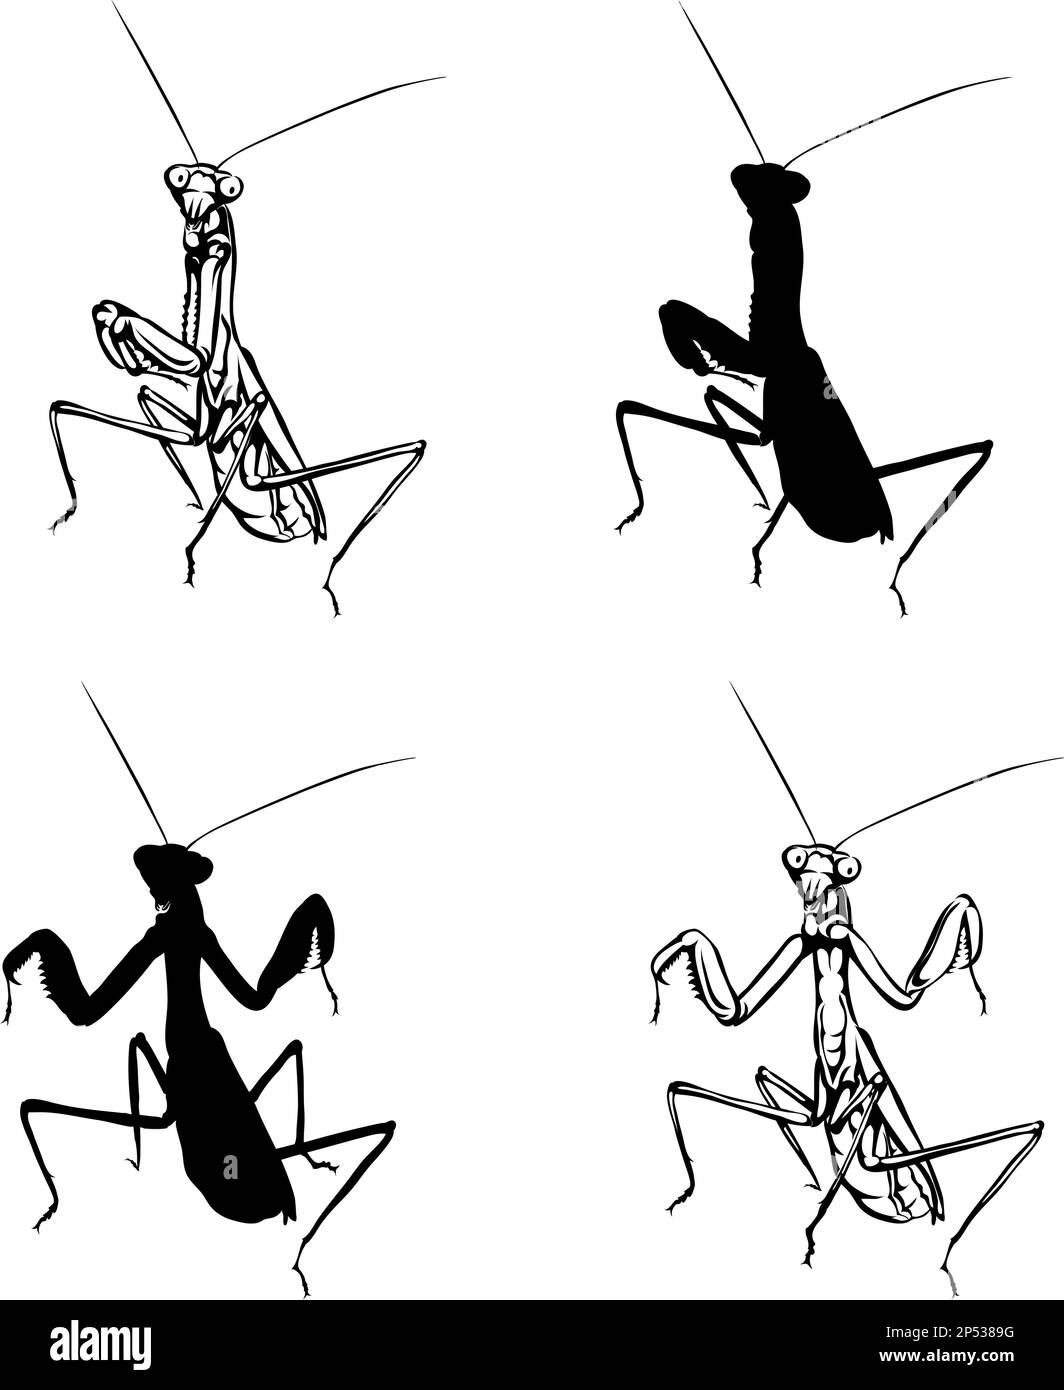 Mantis, insecte mantis, diverses images, vecteur, noir, silhouette, nature, réalisme Illustration de Vecteur